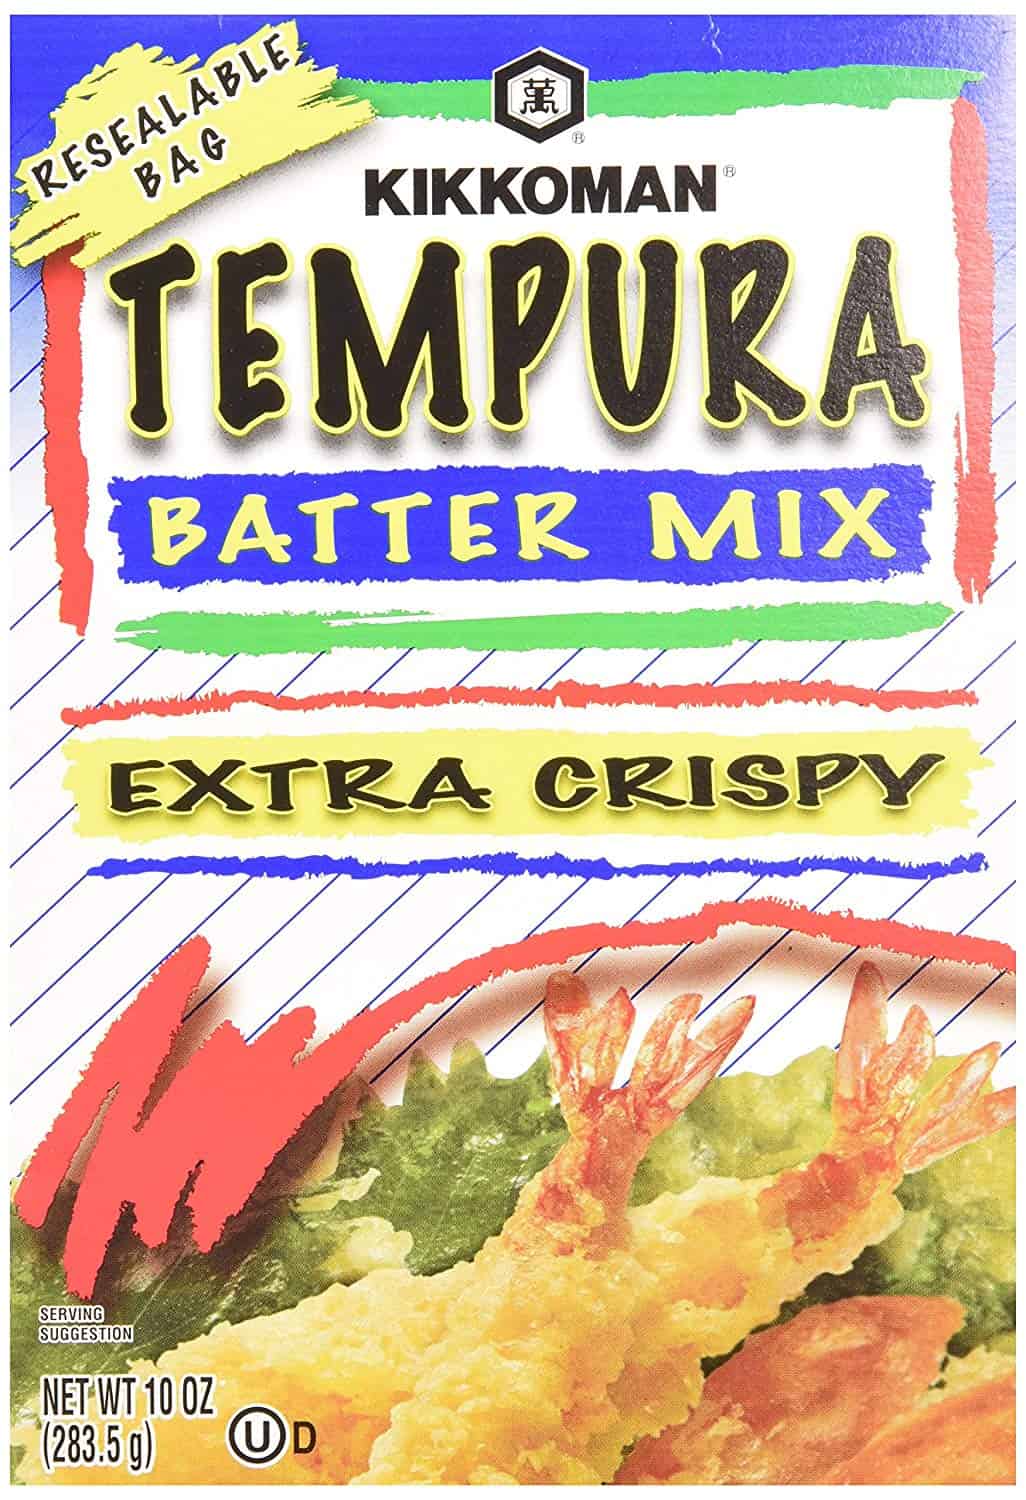 Motsoako oa Kikkoman tempura batter